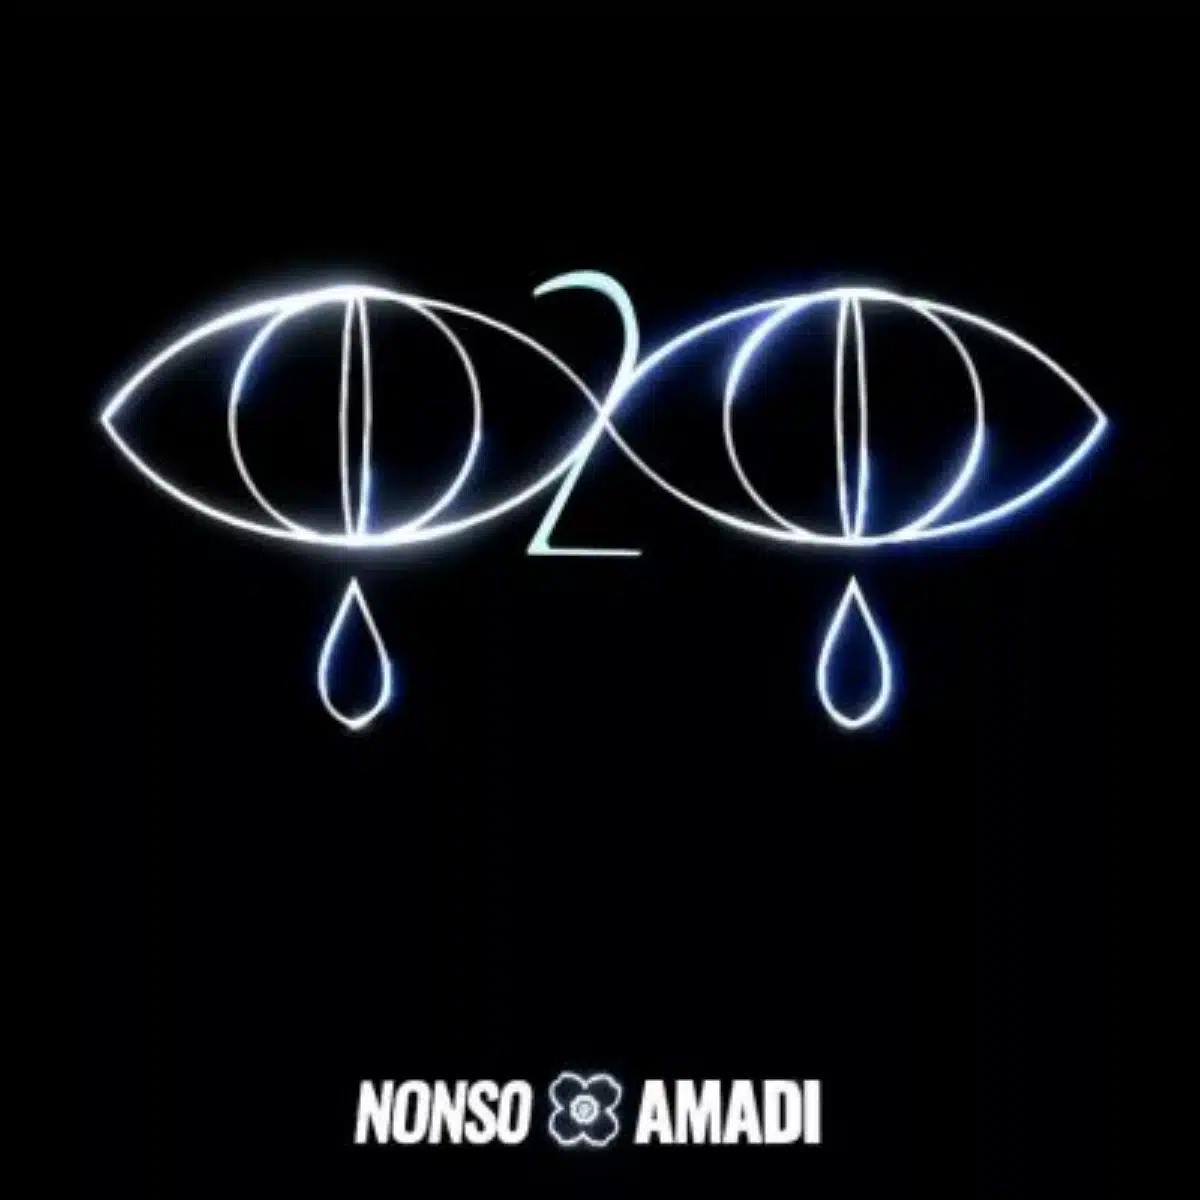 DOWNLOAD: Nonso Amadi – “Eye To Eye” Mp3